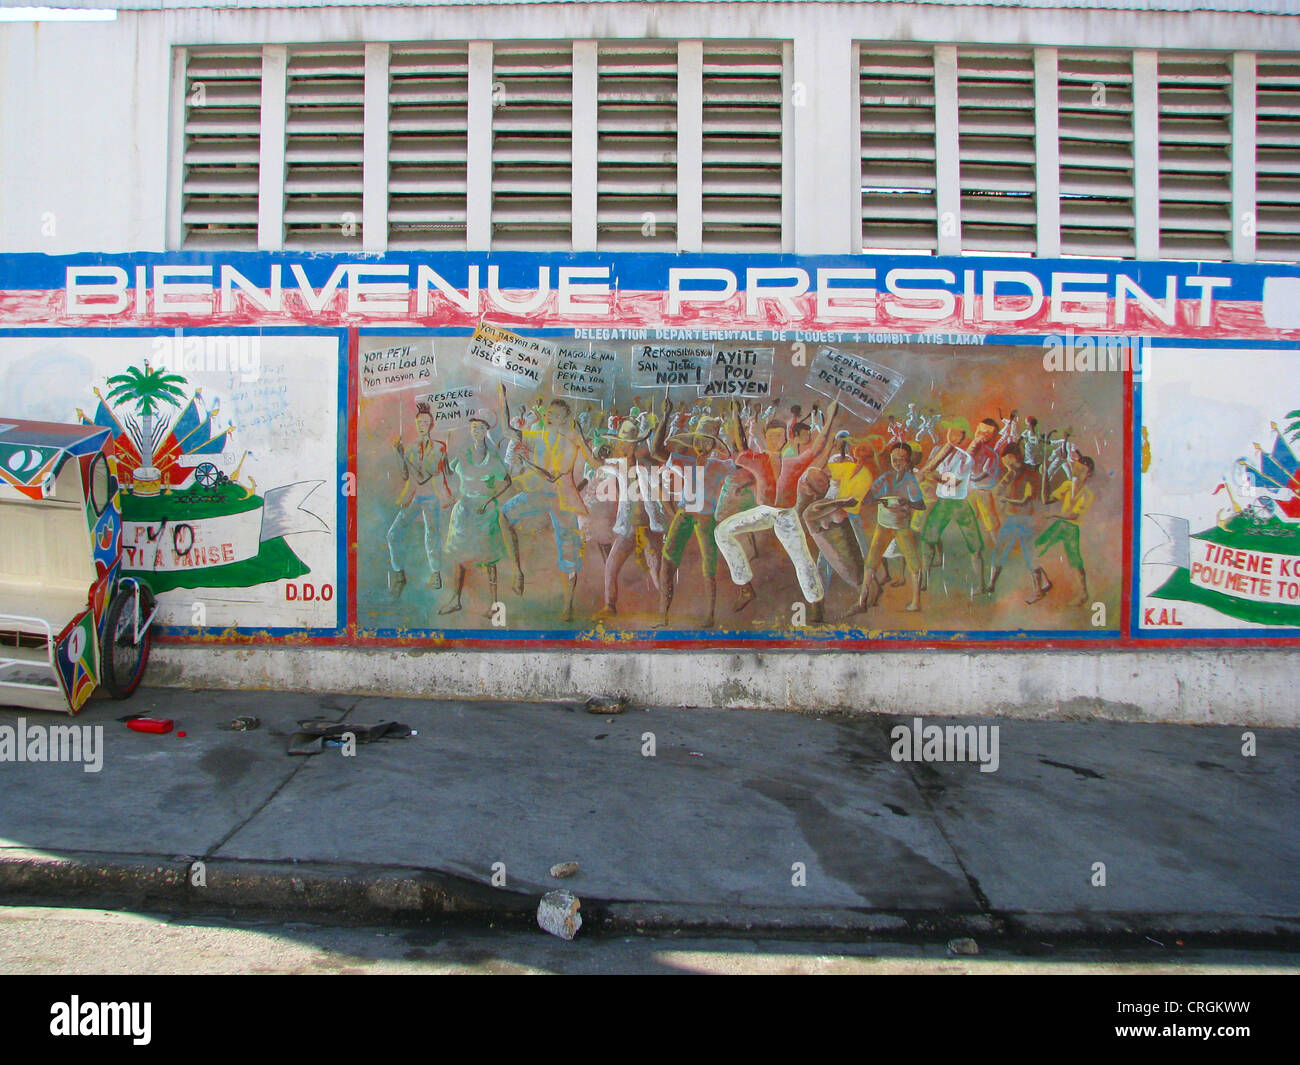 bemalte Wand in der Nähe von Präsidentenpalast zeigt Masse der Menschen und der Slogan "Bienvenue Pr auf" ("Welcome Präsident), Haiti, Provinz de l ' Ouest, Port-Au-Prince Stockfoto